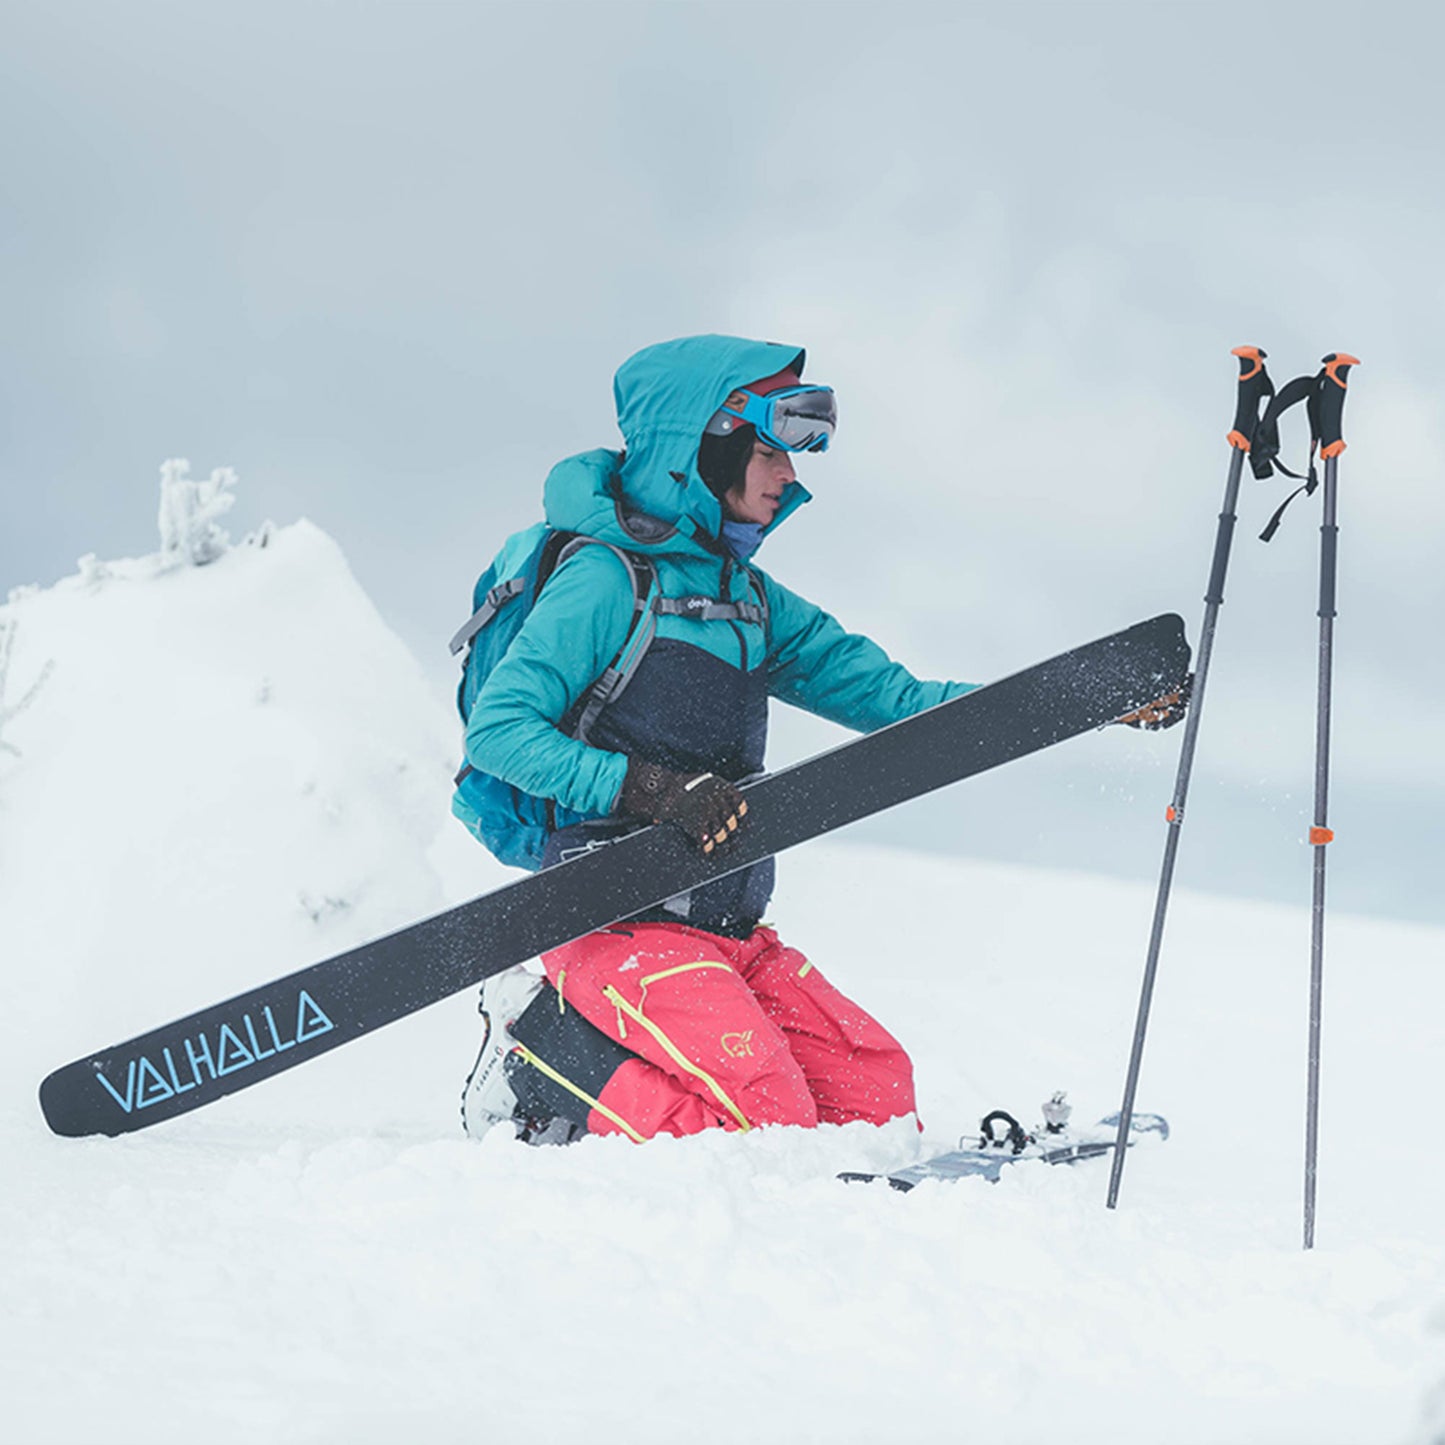 Unsere Auswahl an Skiern umfasst eine Vielzahl von Optionen, die für Anfänger bis hin zu erfahrenen Profis geeignet sind. Entdecken Sie Alpinski, Freerideski, Tourenski und vieles mehr.